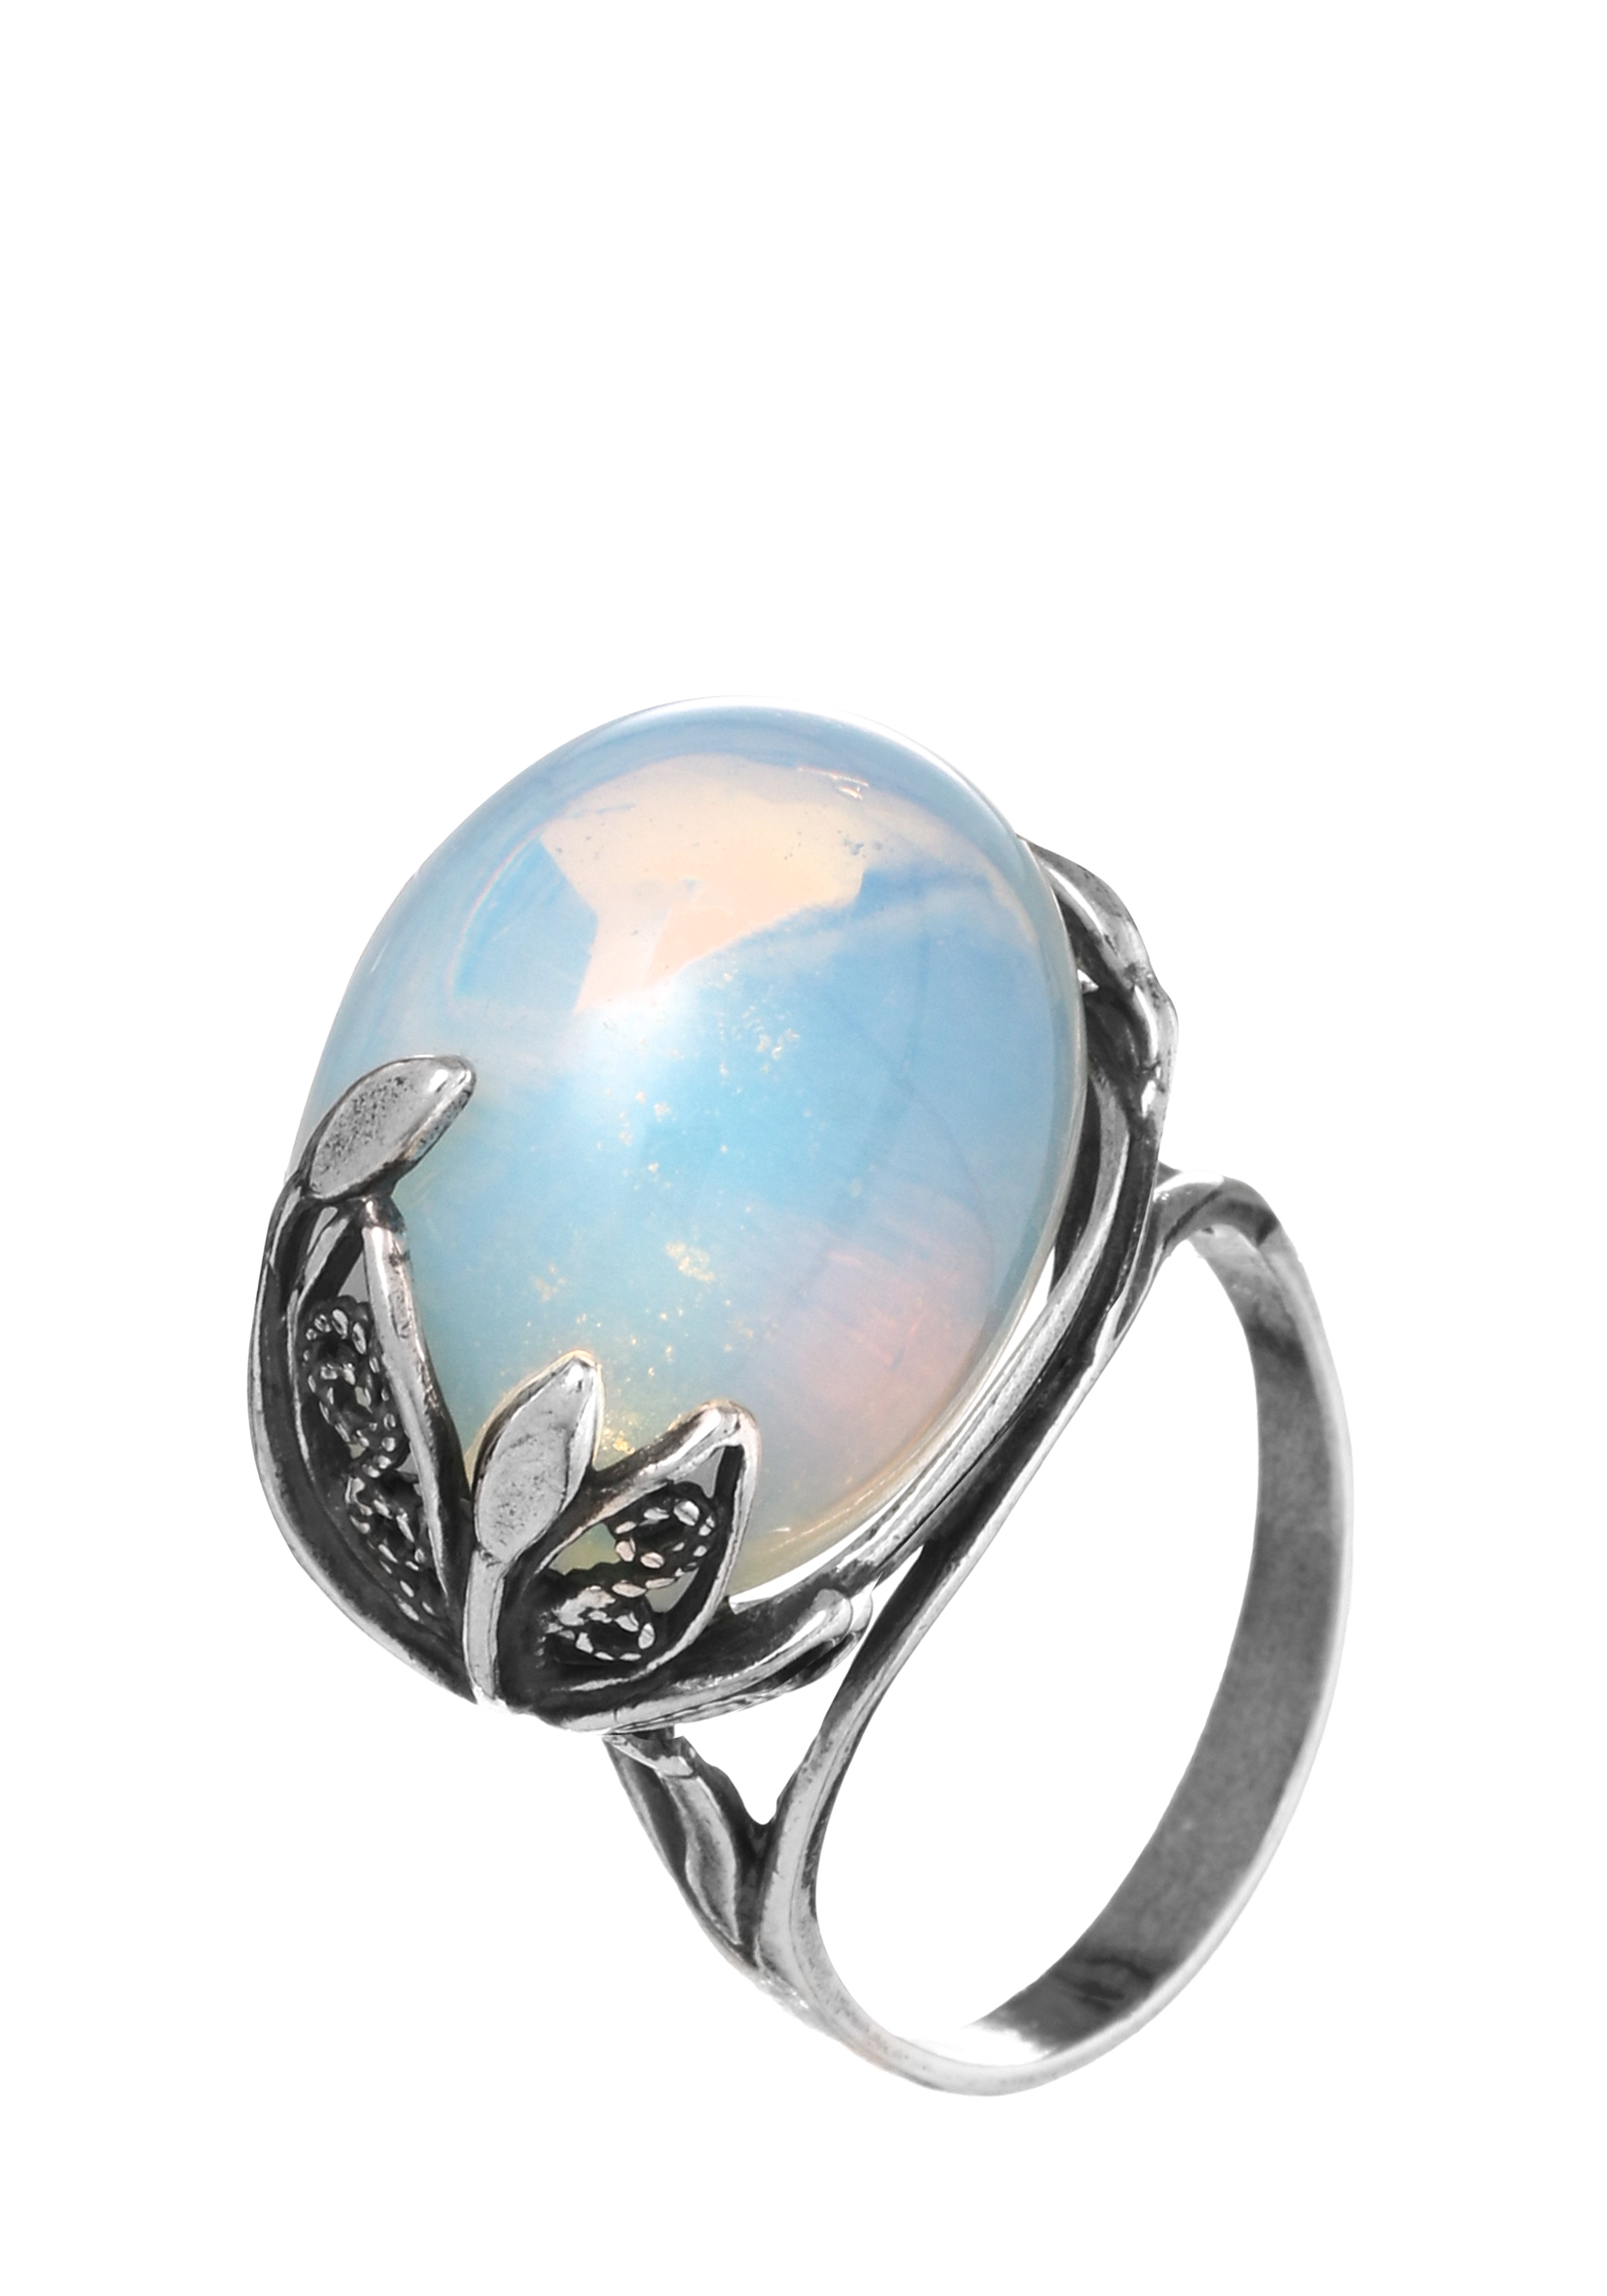 Комплект "Водная стихия" (серьги+кольцо) Silver Star, цвет мультиколор, размер 18 перстень - фото 9